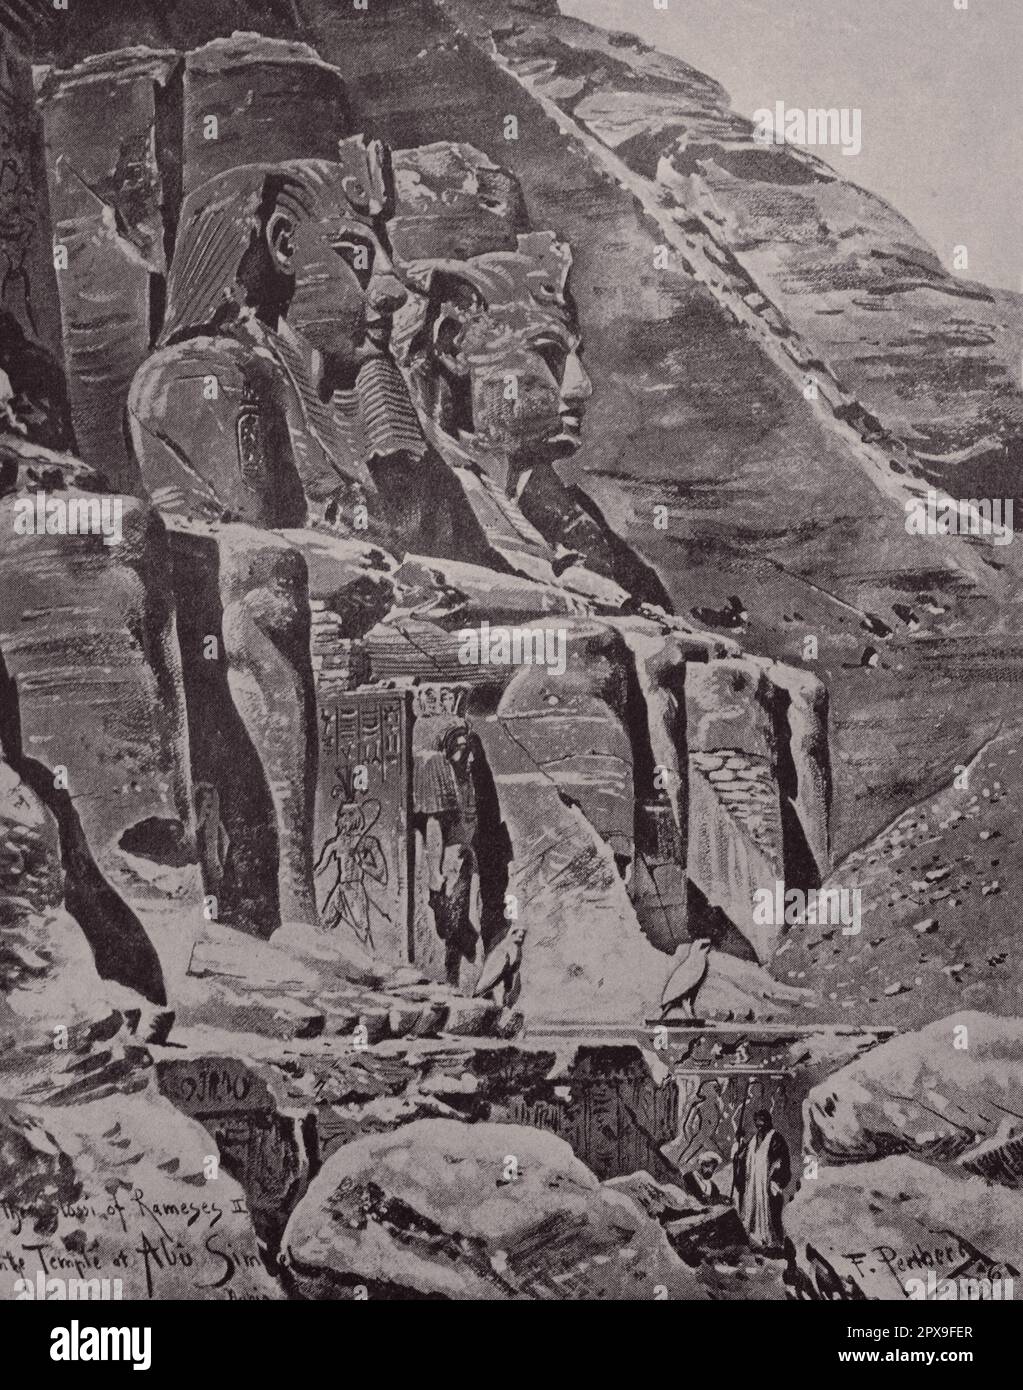 Nubische Denkmäler von Abu Simbel bis Philae. Etwa 1264 v. Chr. Abu Simbel ist eine historische Stätte mit zwei massiven, in Fels gehauenen Tempeln im Dorf Abu Simbel, dem Gouvernement Assuan, Oberägypten, in der Nähe der Grenze zum Sudan. Die Zwillingstempel wurden ursprünglich im 13. Jahrhundert v. Chr. aus dem Gebirge geschnitzt, während der Herrschaft der 19. Dynastie des Pharaos Ramesses II Ihre riesigen äußeren Gesteinsgestein-Figuren von Ramesses II sind zu einem Ikone geworden. Seine Frau, Nefertari, und seine Kinder sind in kleineren Figuren an seinen Füßen zu sehen. Skulpturen im Inneren des Großen Tempels erinnern an Ramesses II. Heldenhafte Führer Stockfoto